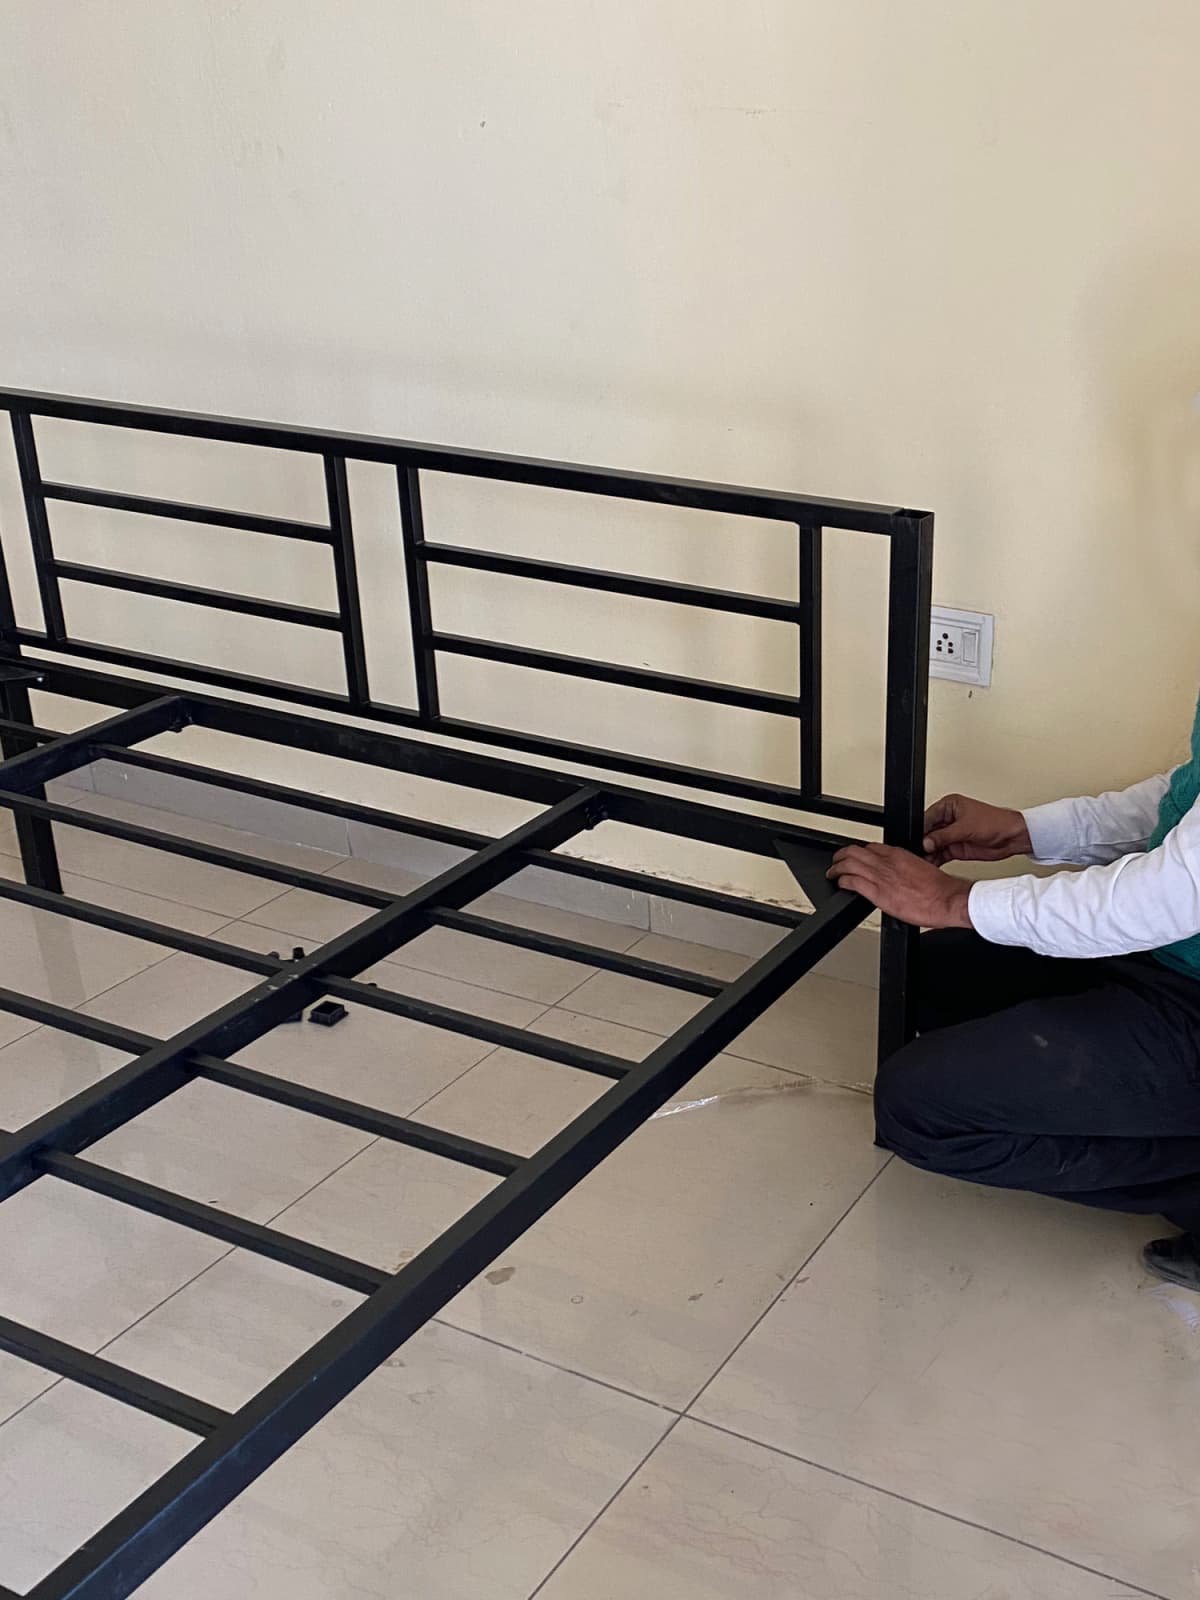 A handy man assembling a metal bed frame